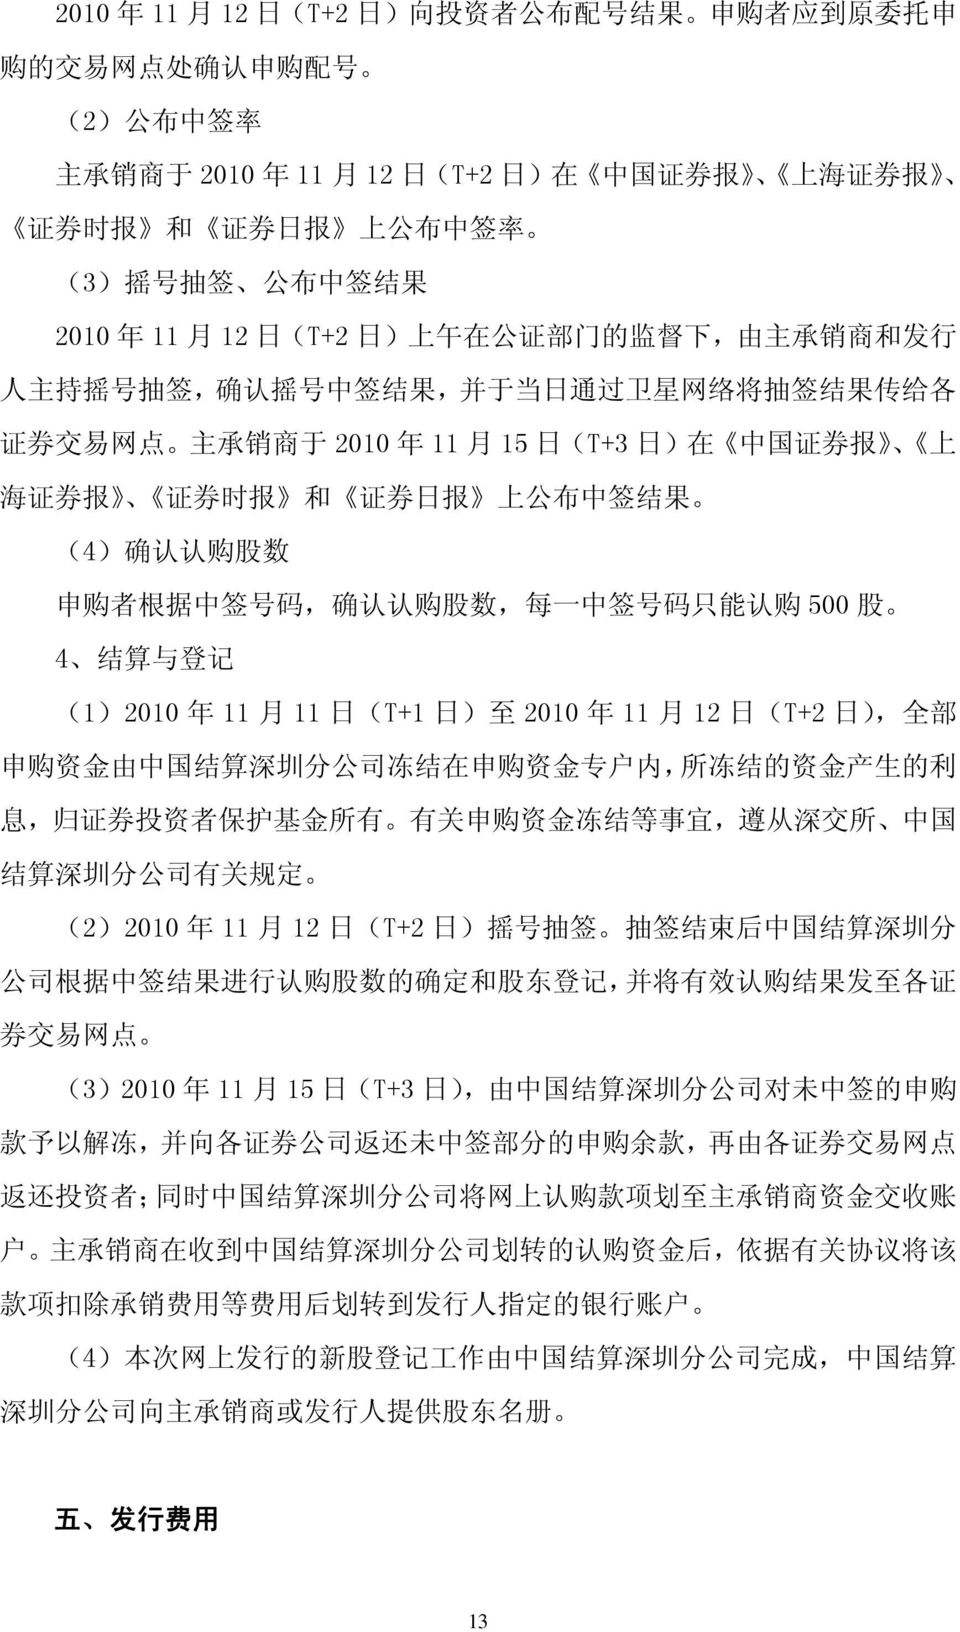 中 国 证 券 报 上 海 证 券 报 证 券 时 报 和 证 券 日 报 上 公 布 中 签 结 果 (4) 确 认 认 购 股 数 申 购 者 根 据 中 签 号 码, 确 认 认 购 股 数, 每 一 中 签 号 码 只 能 认 购 500 股 4 结 算 与 登 记 (1)2010 年 11 月 11 日 (T+1 日 ) 至 2010 年 11 月 12 日 (T+2 日 ), 全 部